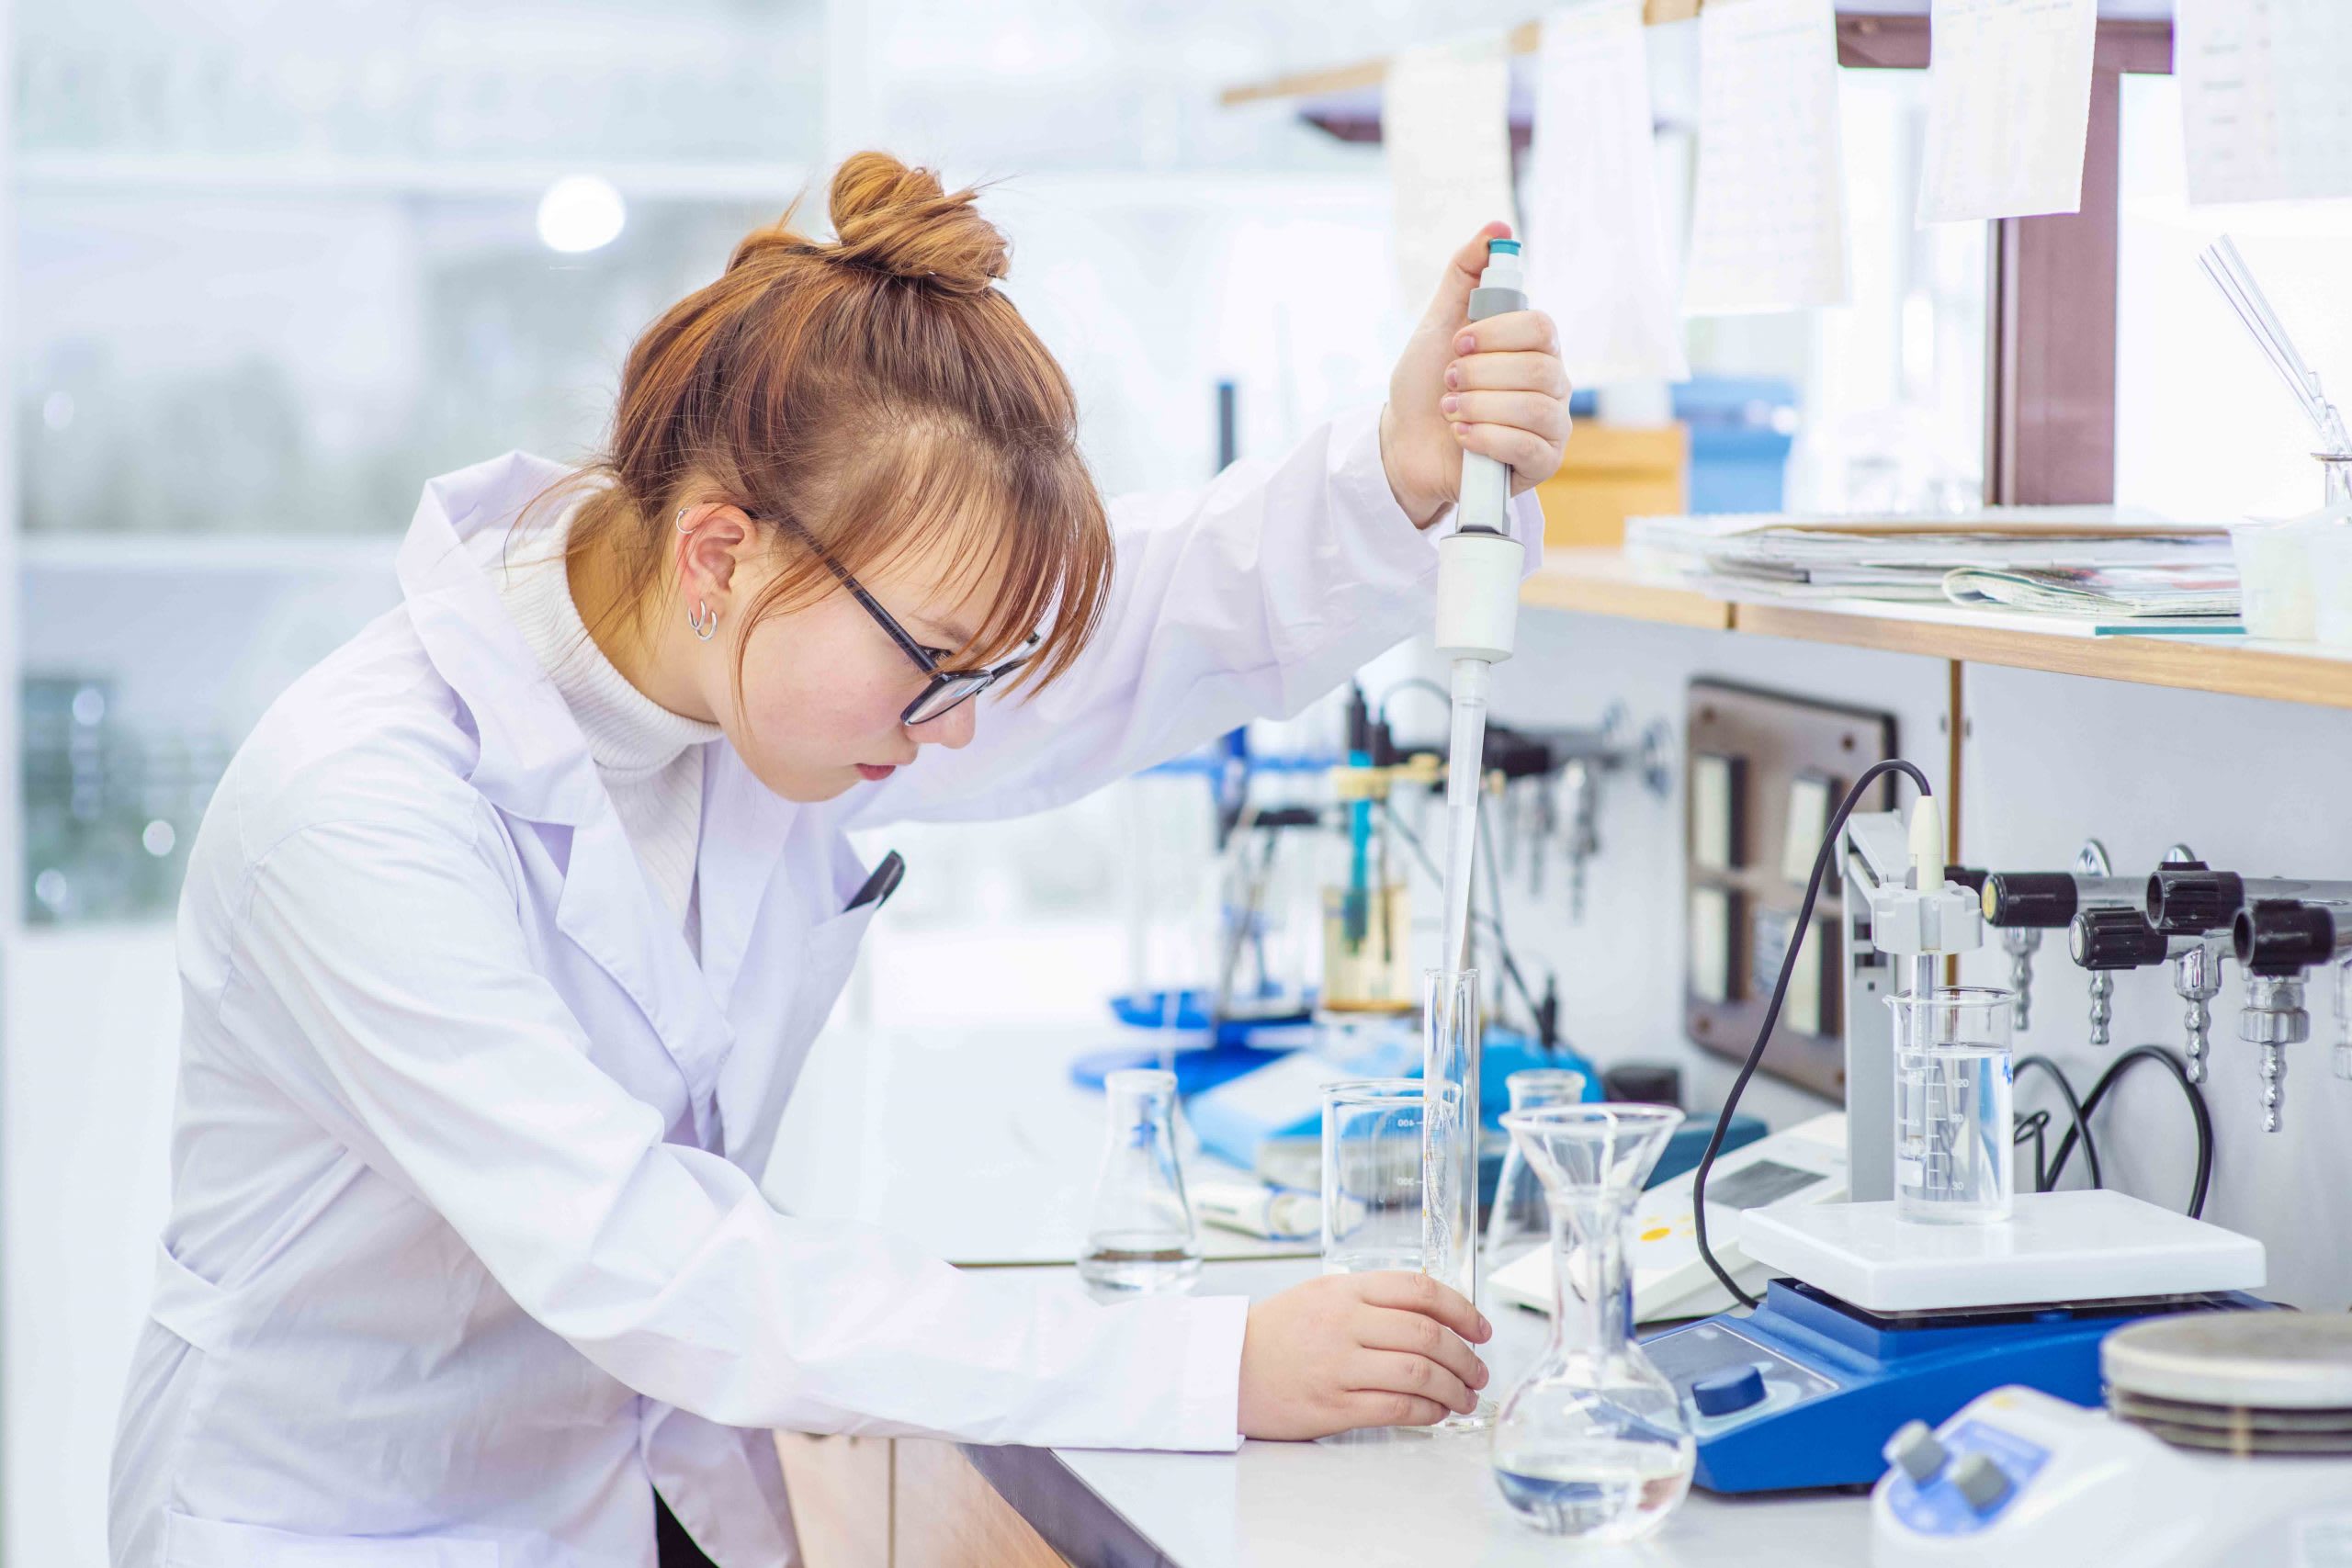 Якісну освіту в галузі хімії в Чехії можна здобути в Карловому університеті, Вищій школі хімічної технології, Технічному університеті в Остраві та університеті Пардубіце.